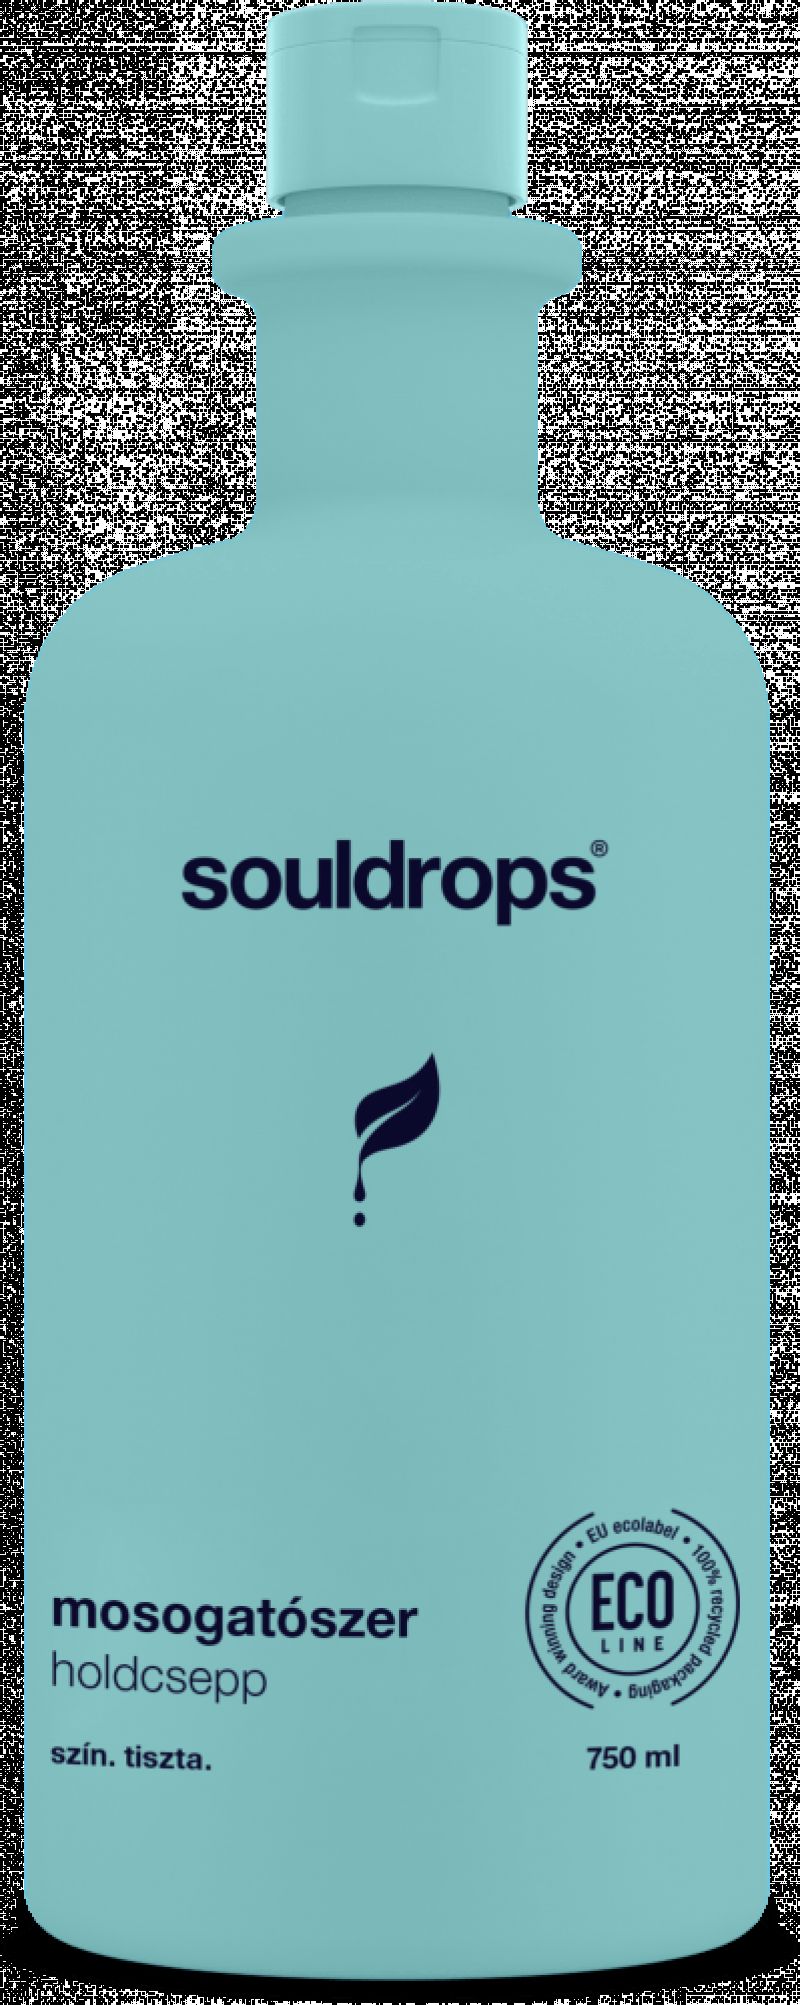 Souldrops mosogatószer – Holdcsepp (750 ml)